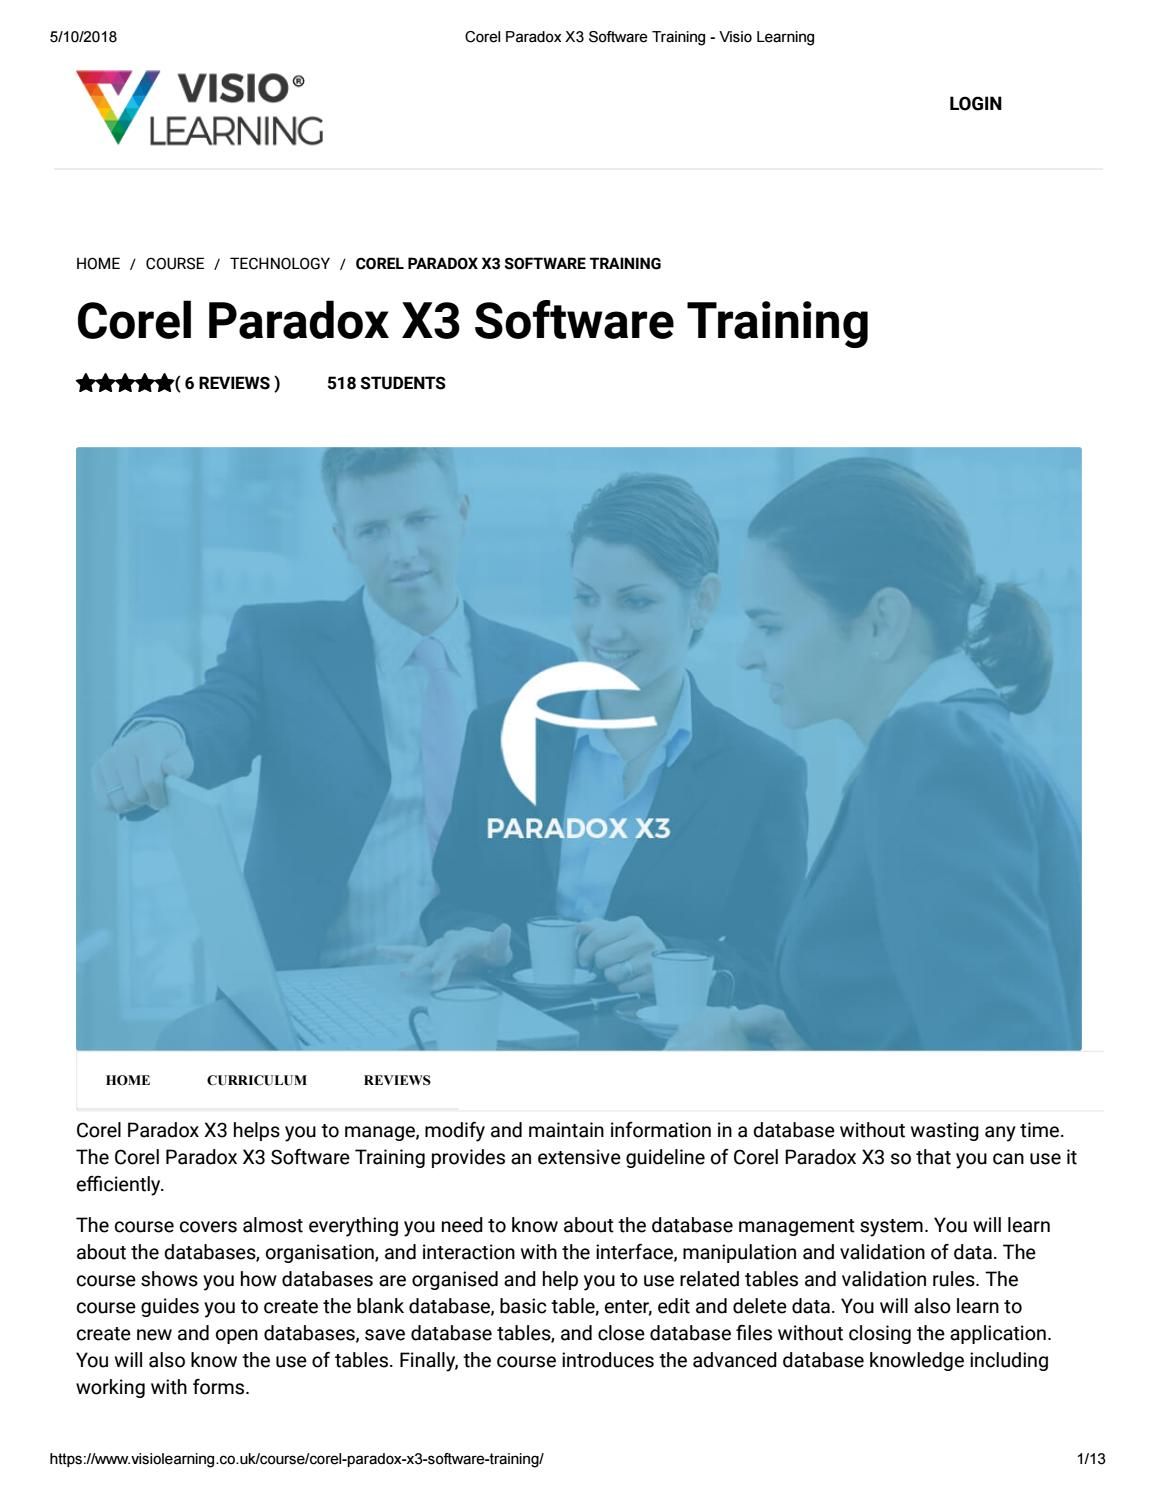 corel paradox database software